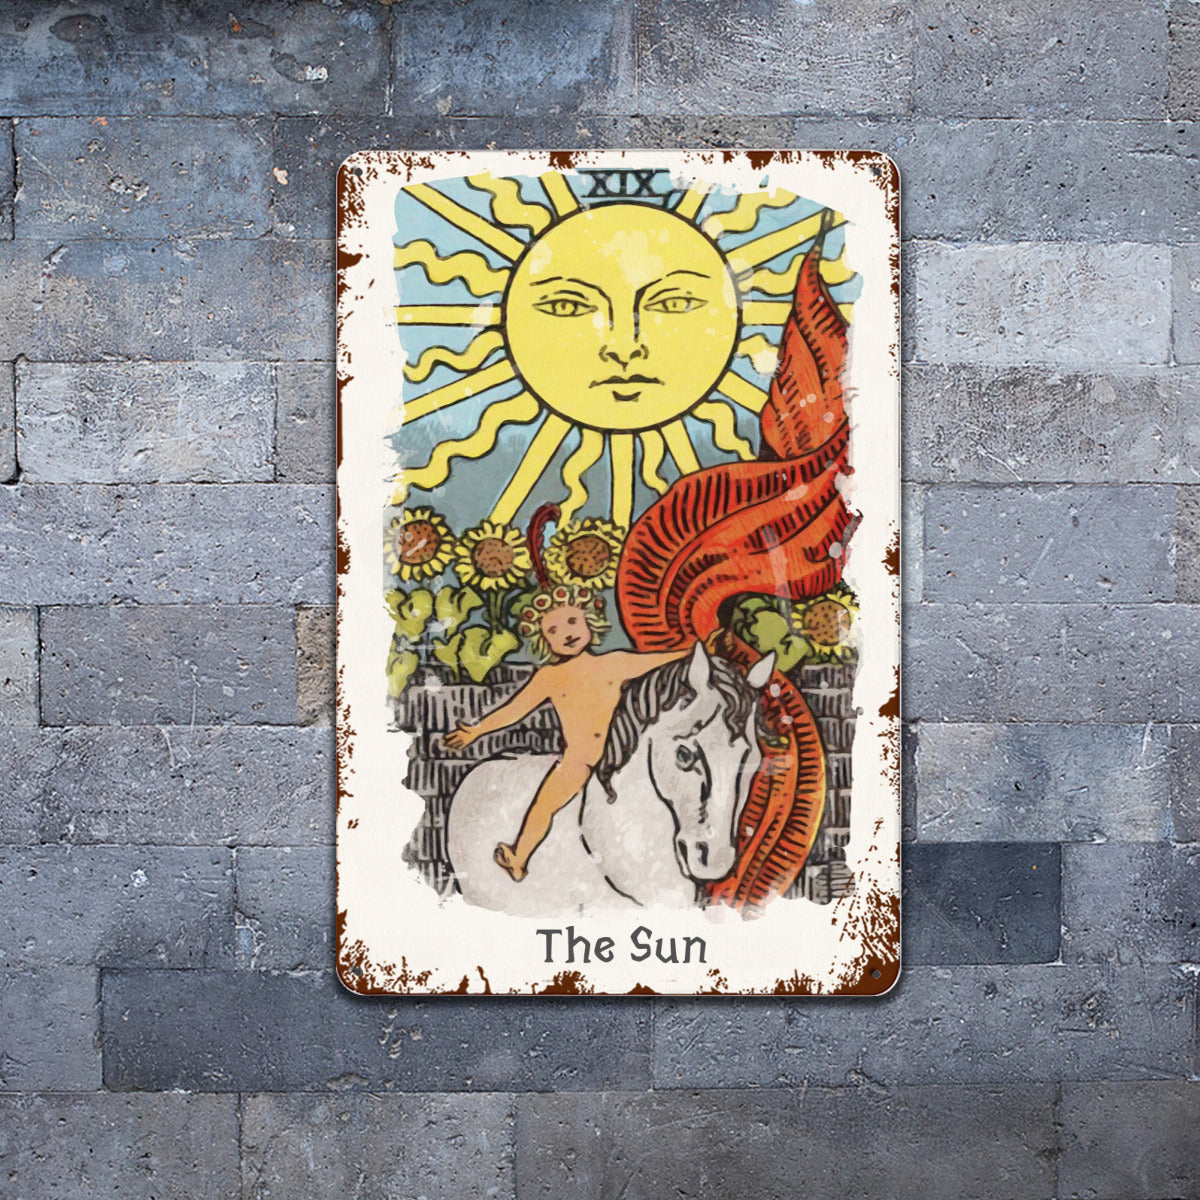 Tin Sign Of The Sun Tarot Card Painting • Major Arcana Waite-Style Cards Vintage Metal Print • Apollo Tarot Design Shop